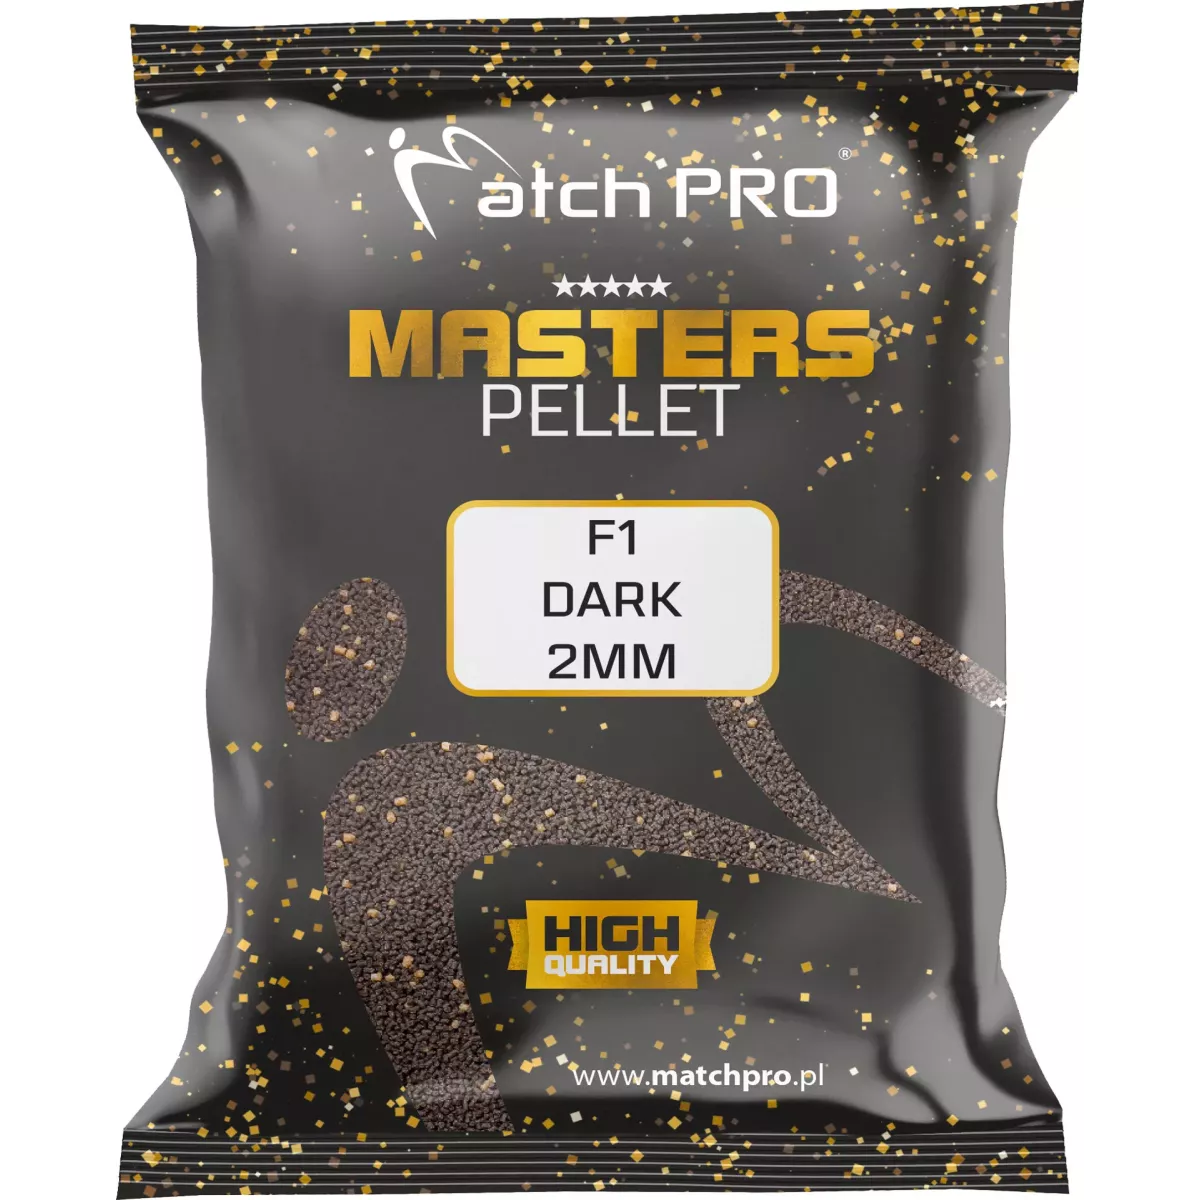 Pellet MatchPro Masters 2mm - F1 DARK